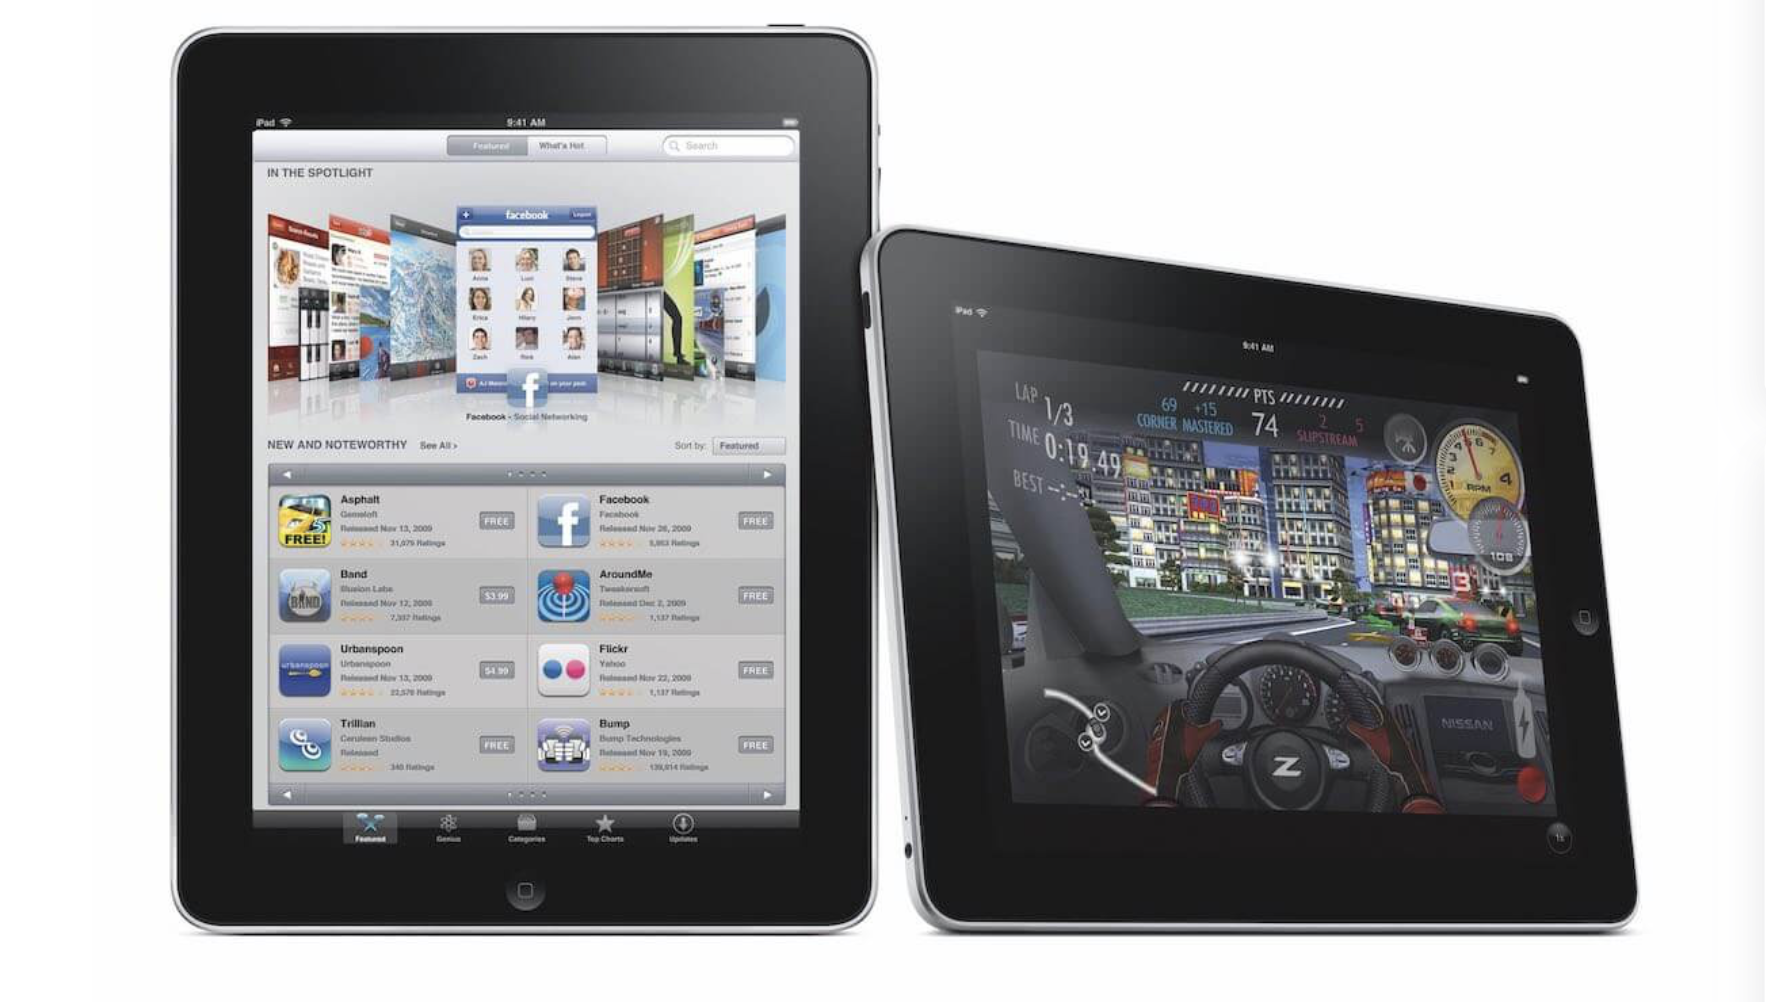 Az iPad lett a 2010-es évek legjobb terméke a TIME magazin szerint